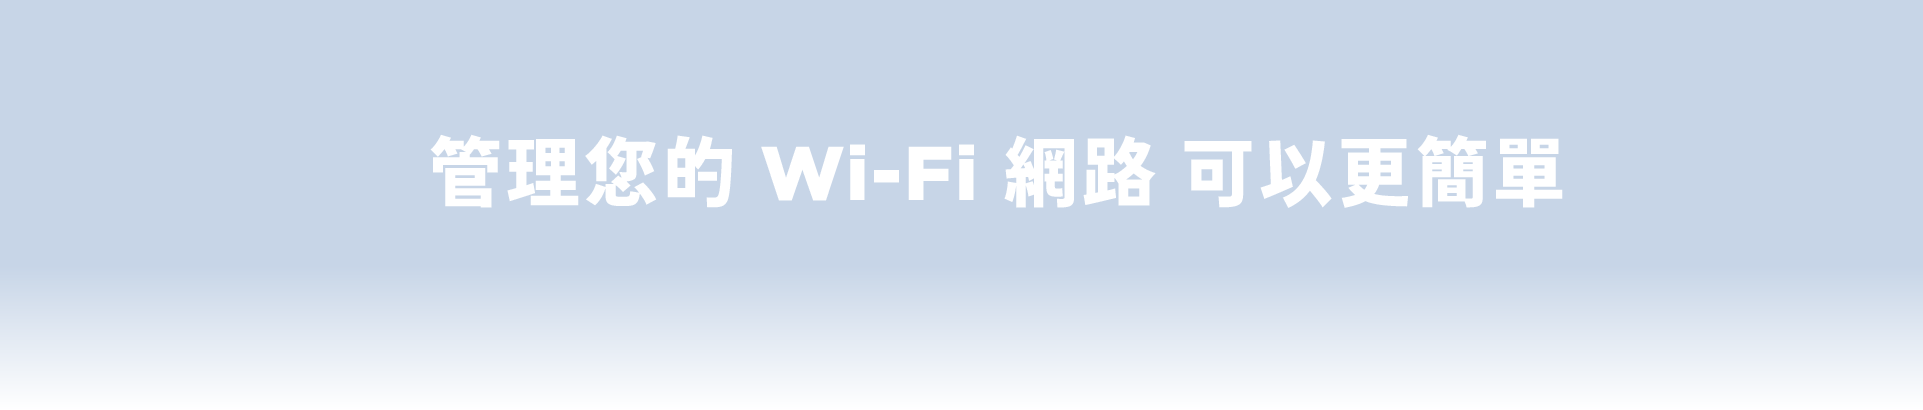 管理您的 Wi-Fi 網路 可以更簡單